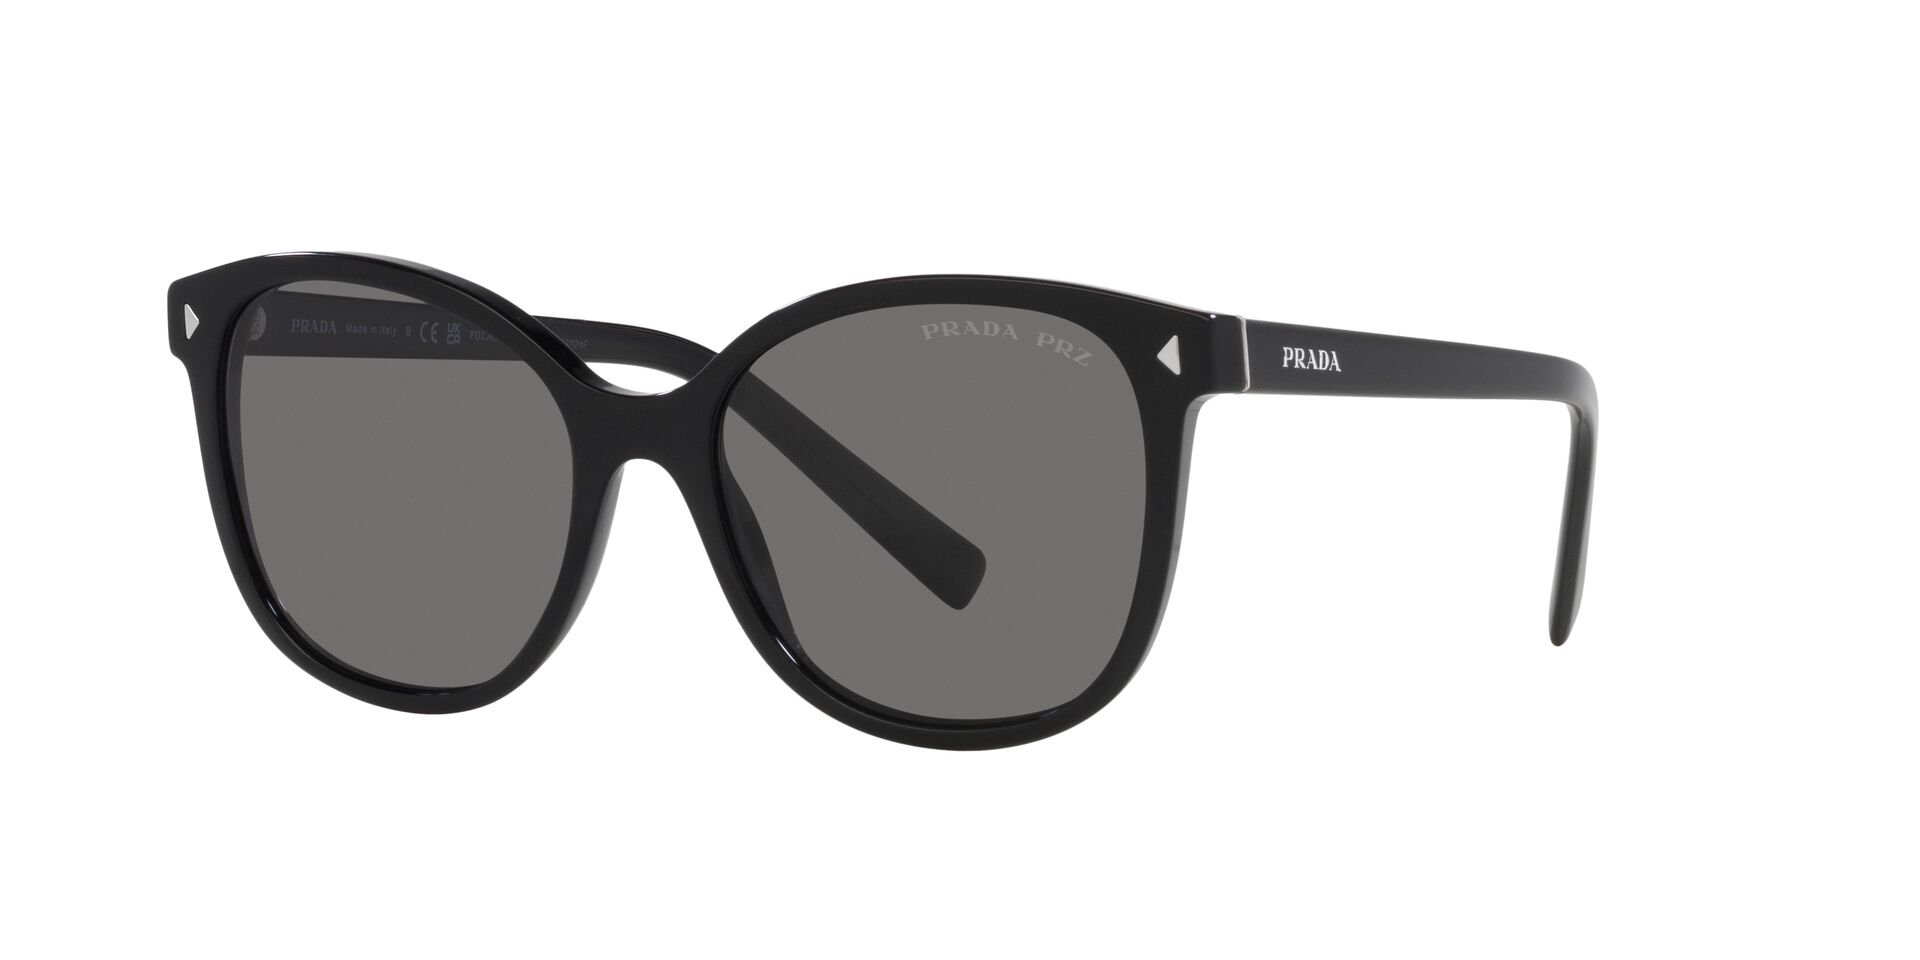 Das Bild zeigt die Sonnenbrille PR22ZS 1AB5Z17 von der Marke Prada in schwarz.